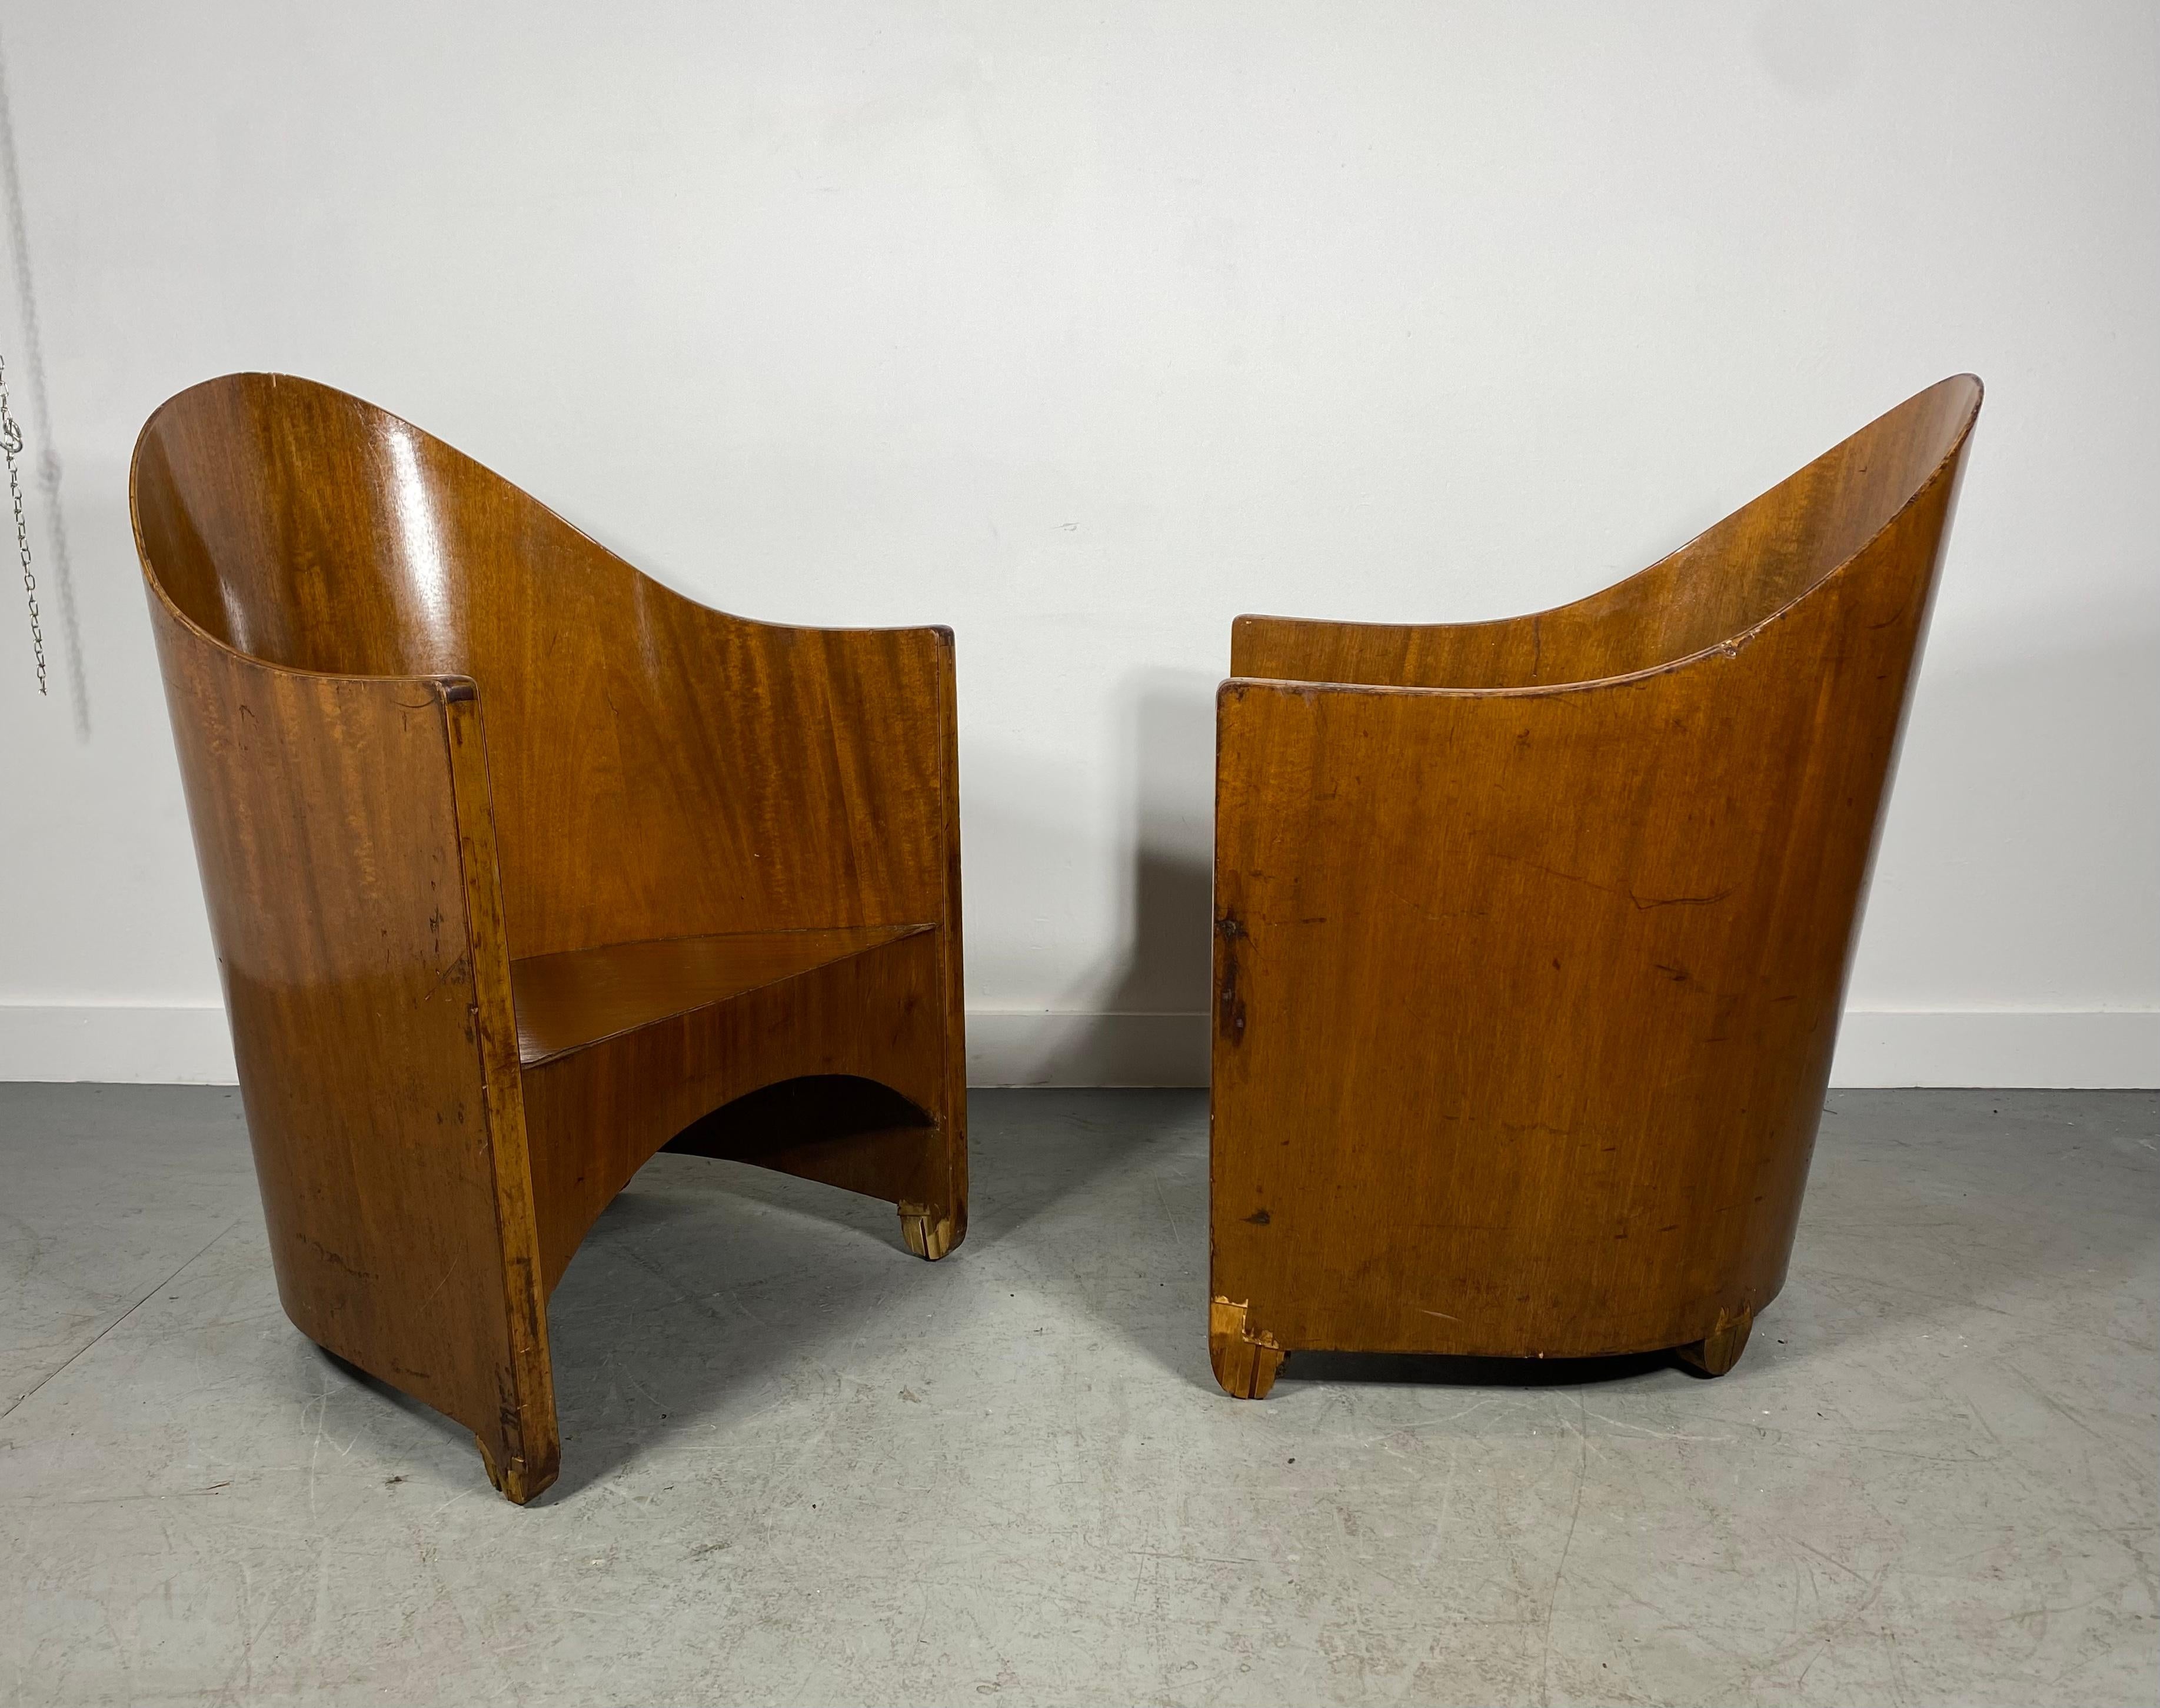 Rare Pair Modernist Arm Chairs by Walter von Nessen, Art Deco, circa 1929 For Sale 5